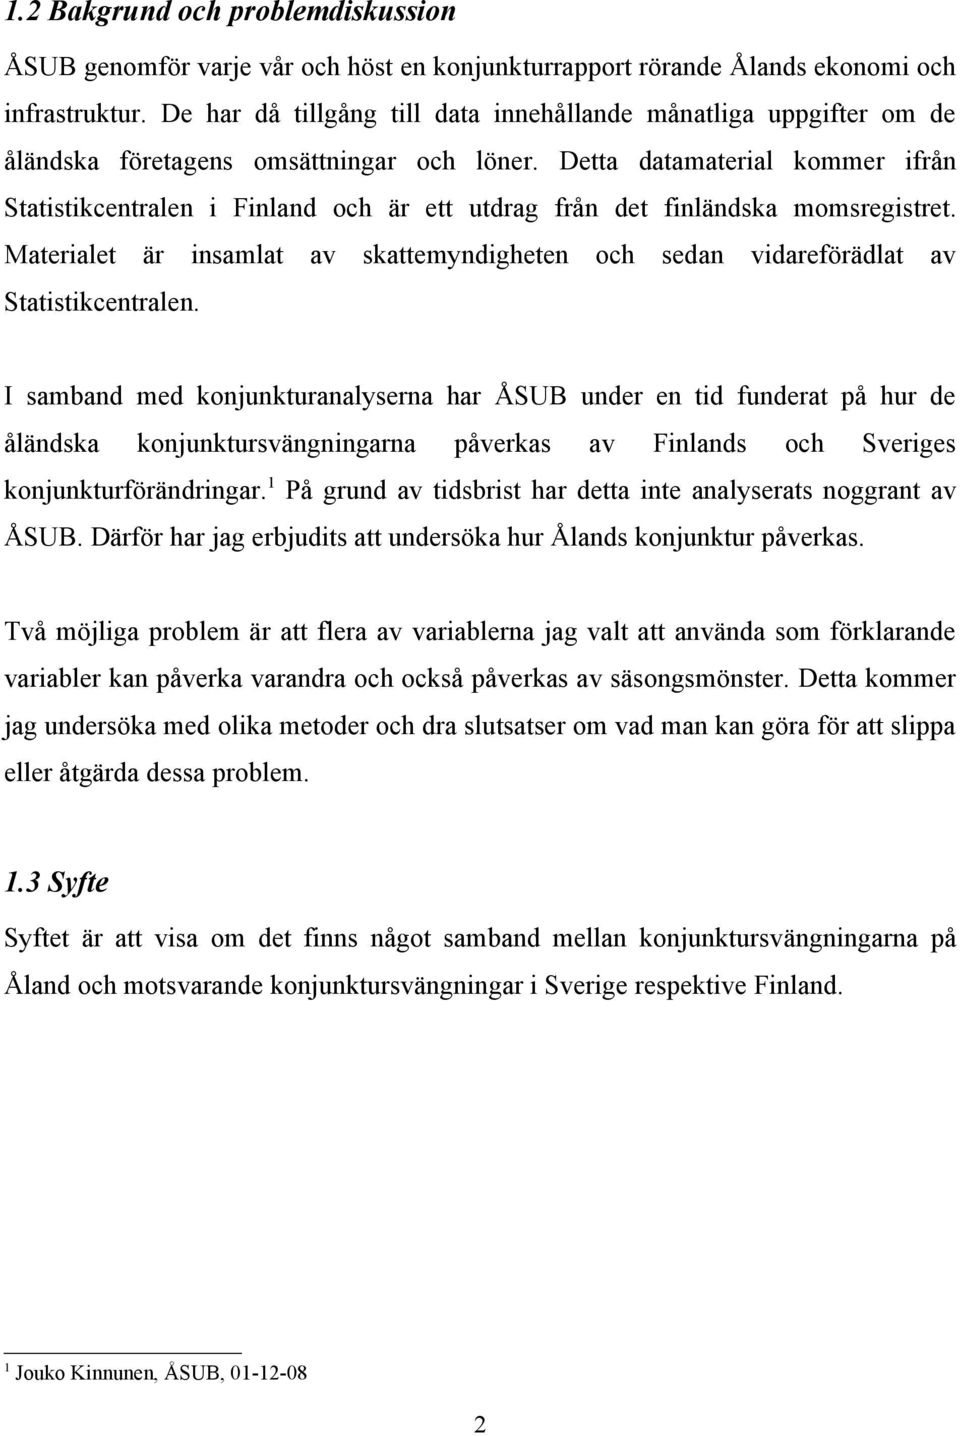 Detta datamaterial kommer ifrån Statistikcentralen i Finland och är ett utdrag från det finländska momsregistret.